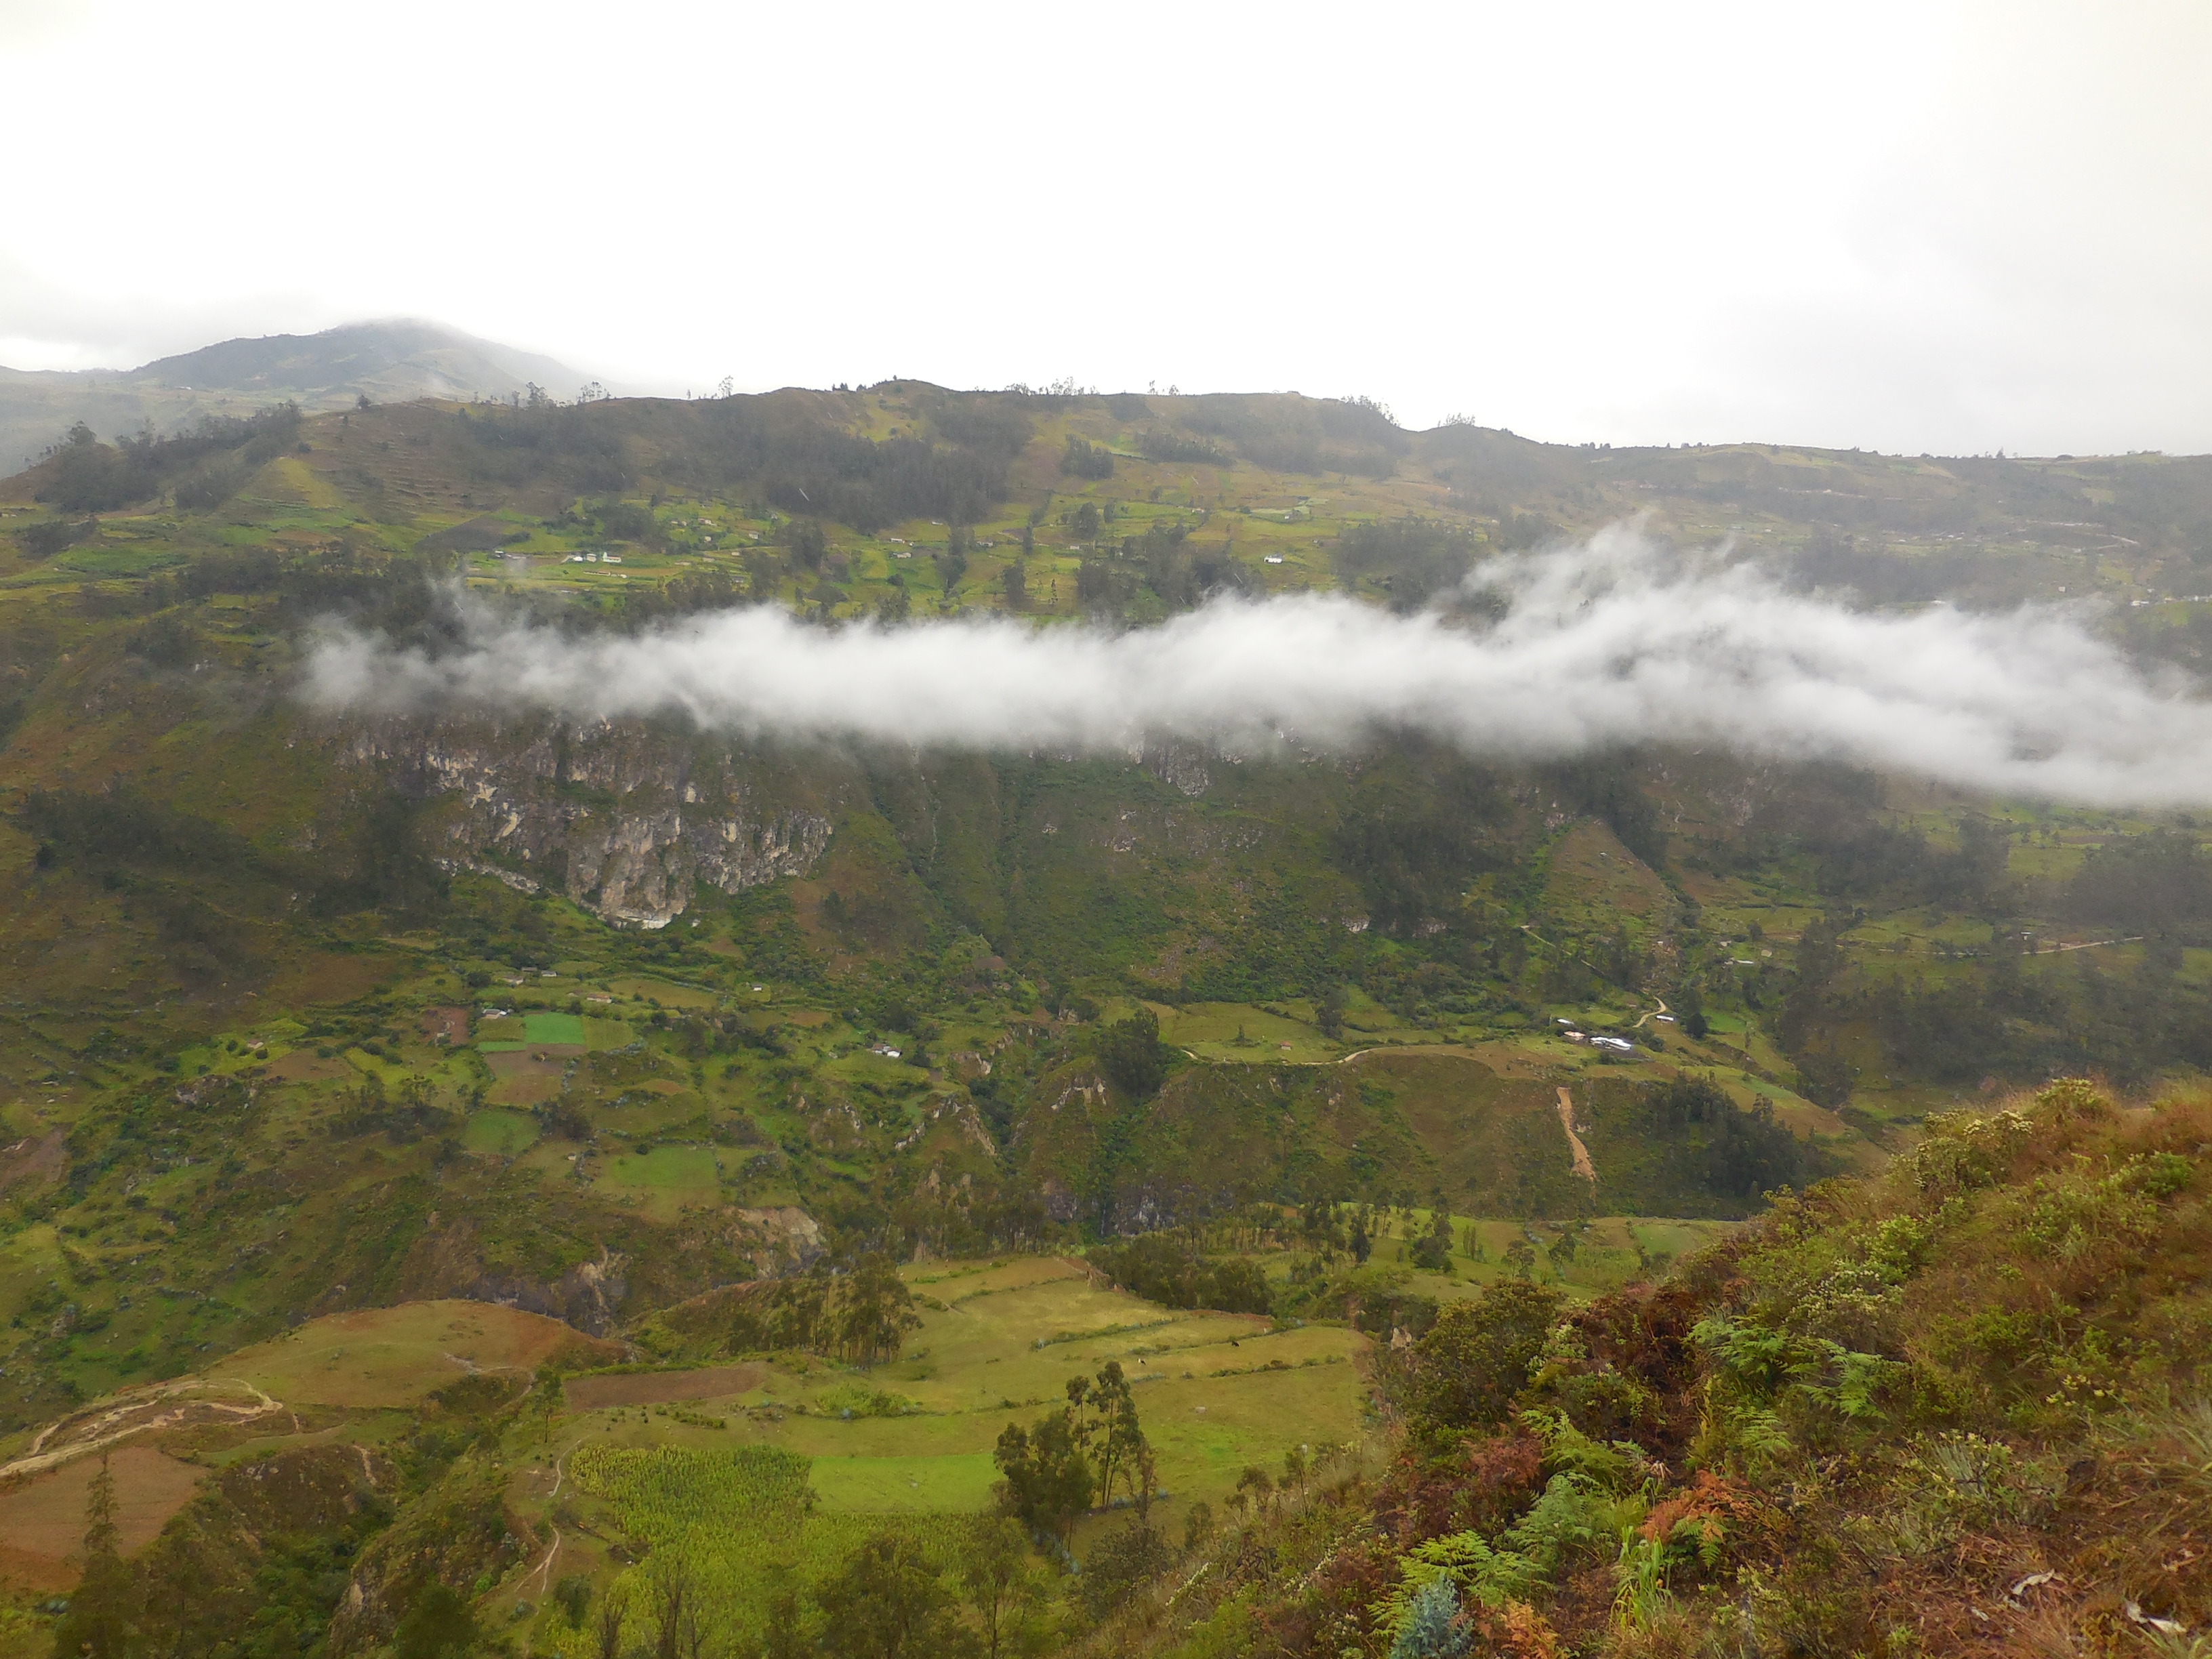 Mes premiers pas durables en Équateur